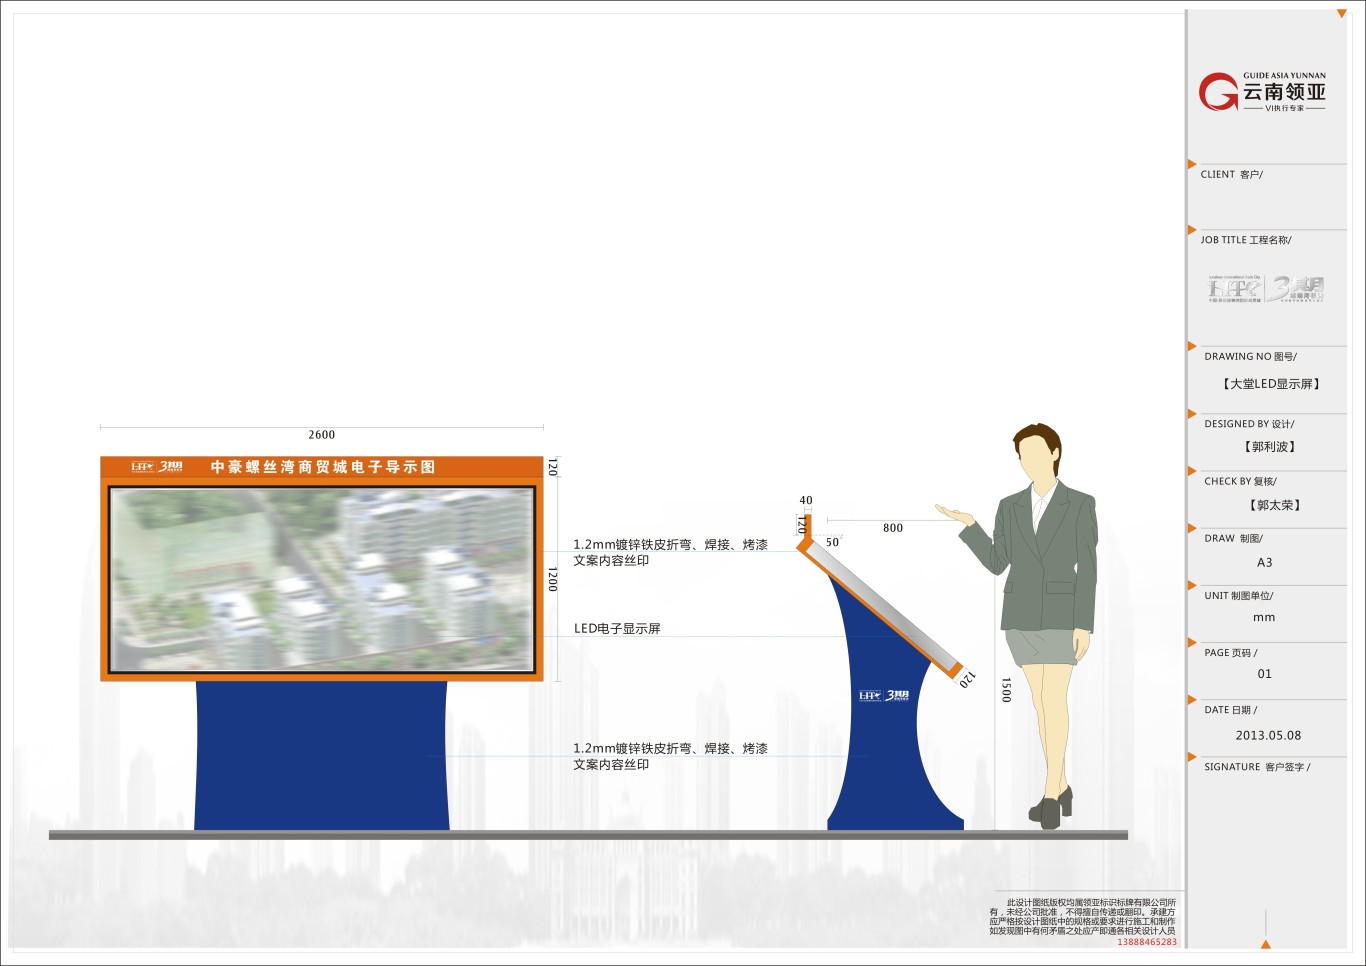 昆明螺蛳湾标识系统设计方案图107